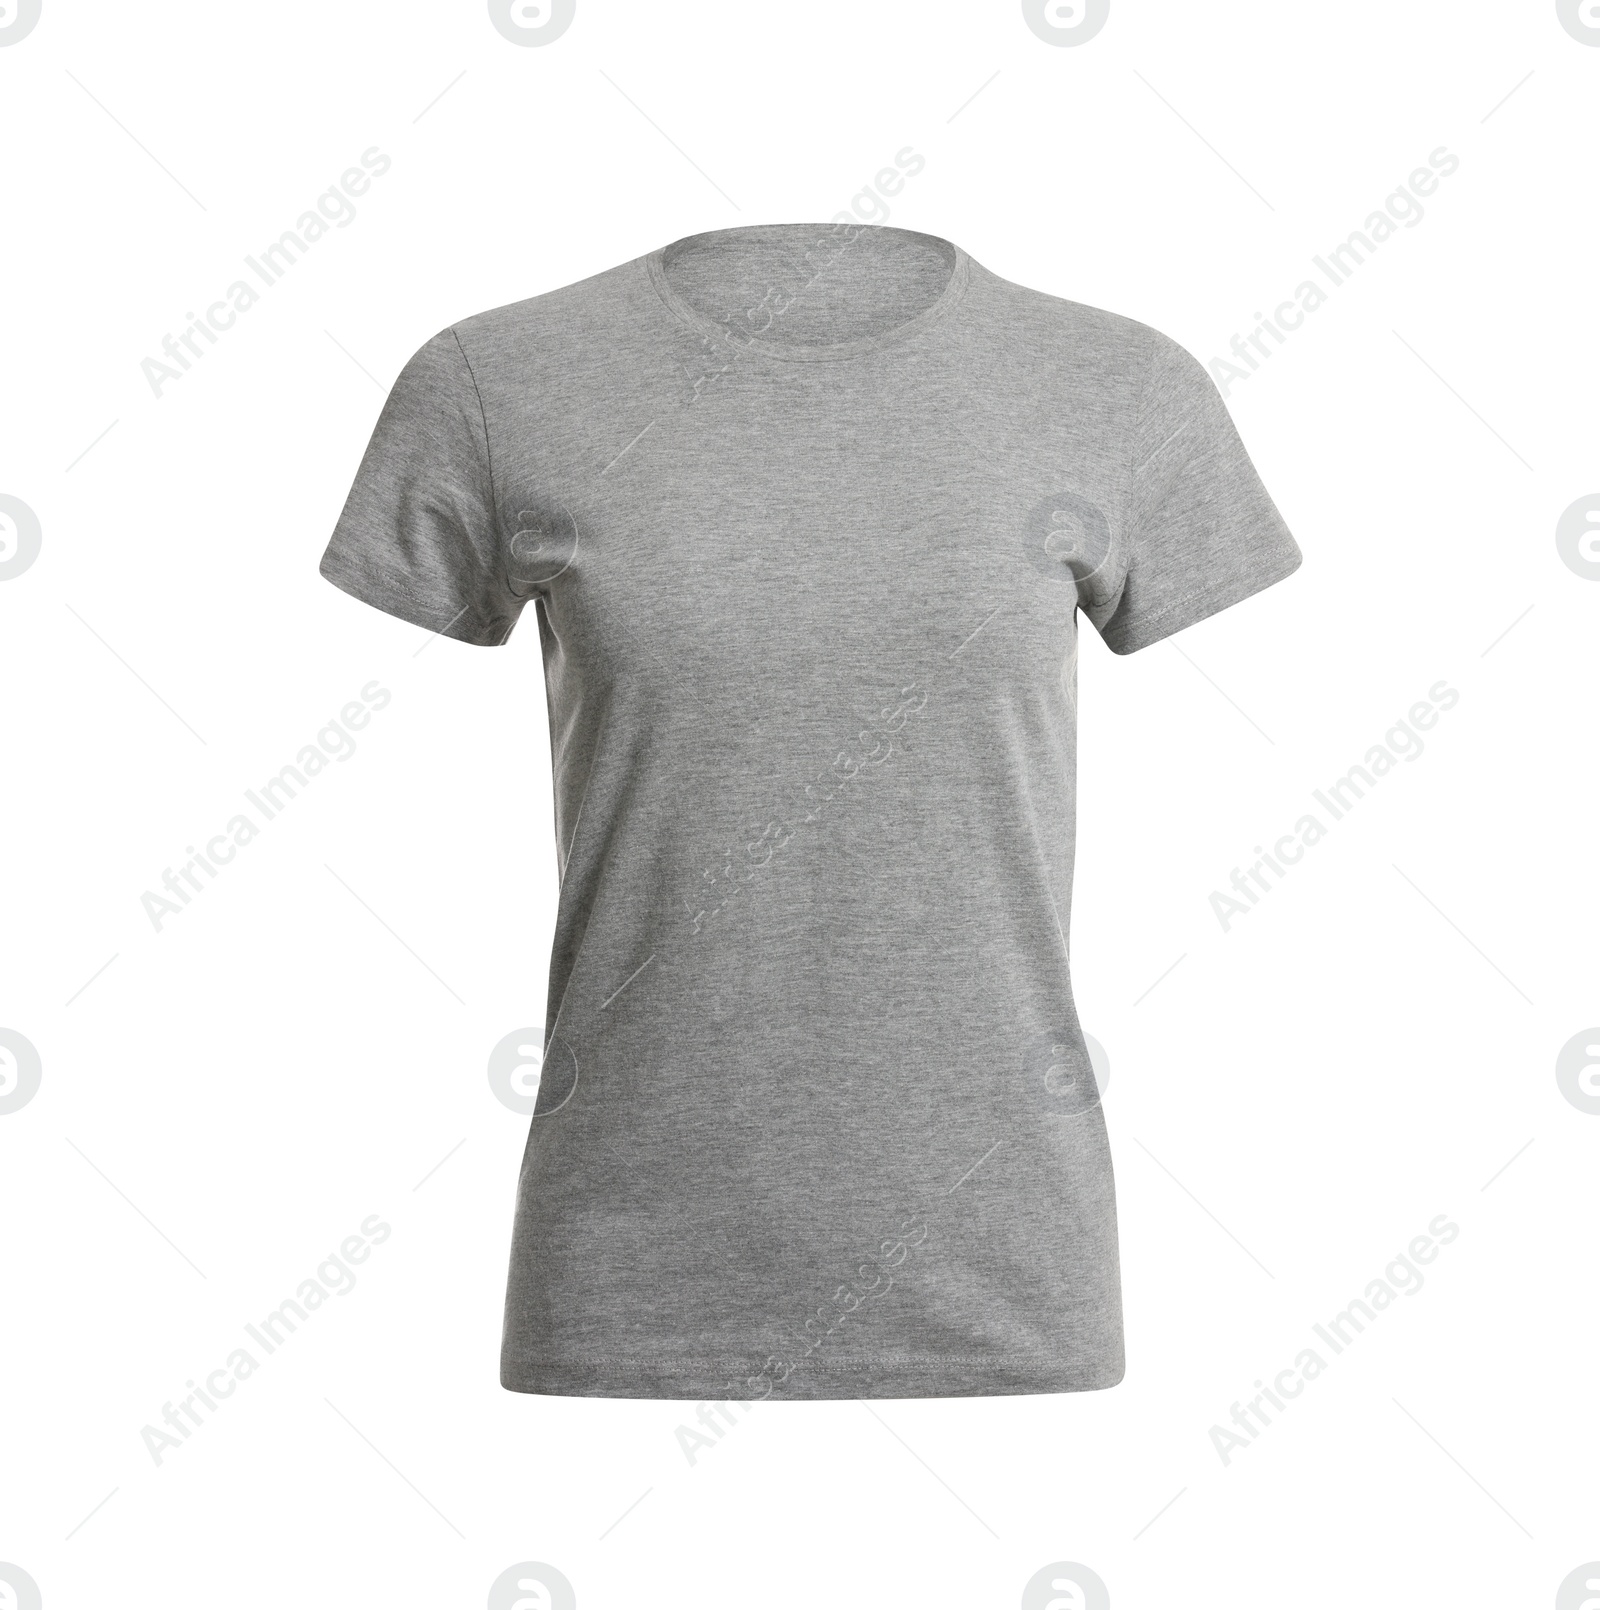 Photo of Stylish grey women's t-shirt isolated on white. Mockup for design